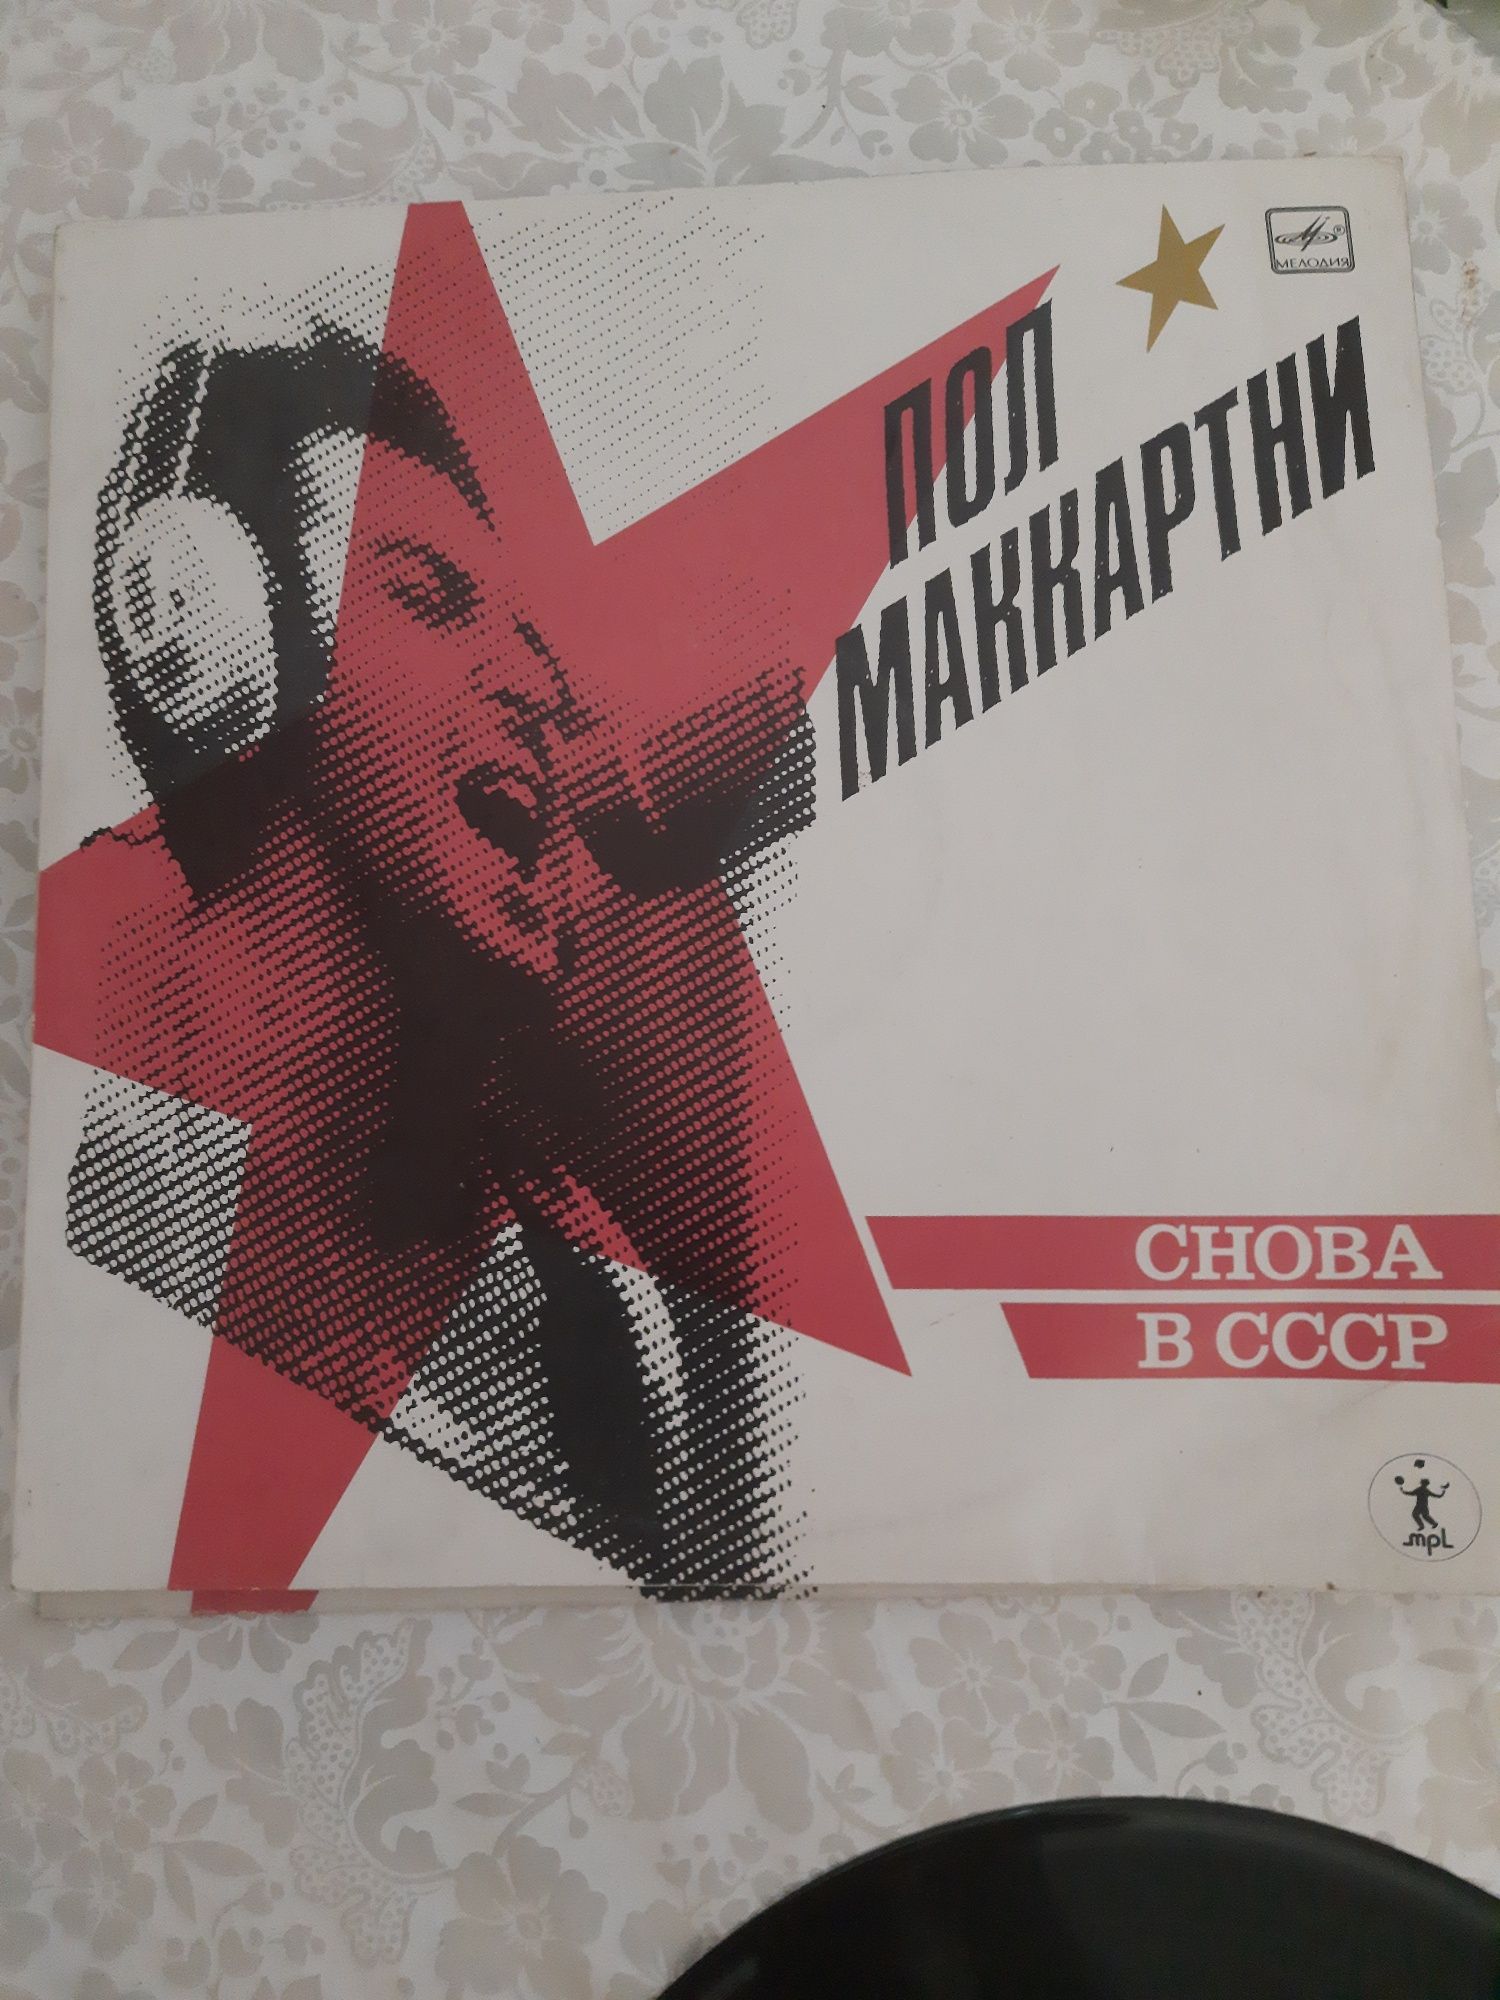 Płyta winylowa nowa CCCP ZSRR Pol Makartnej Melodia